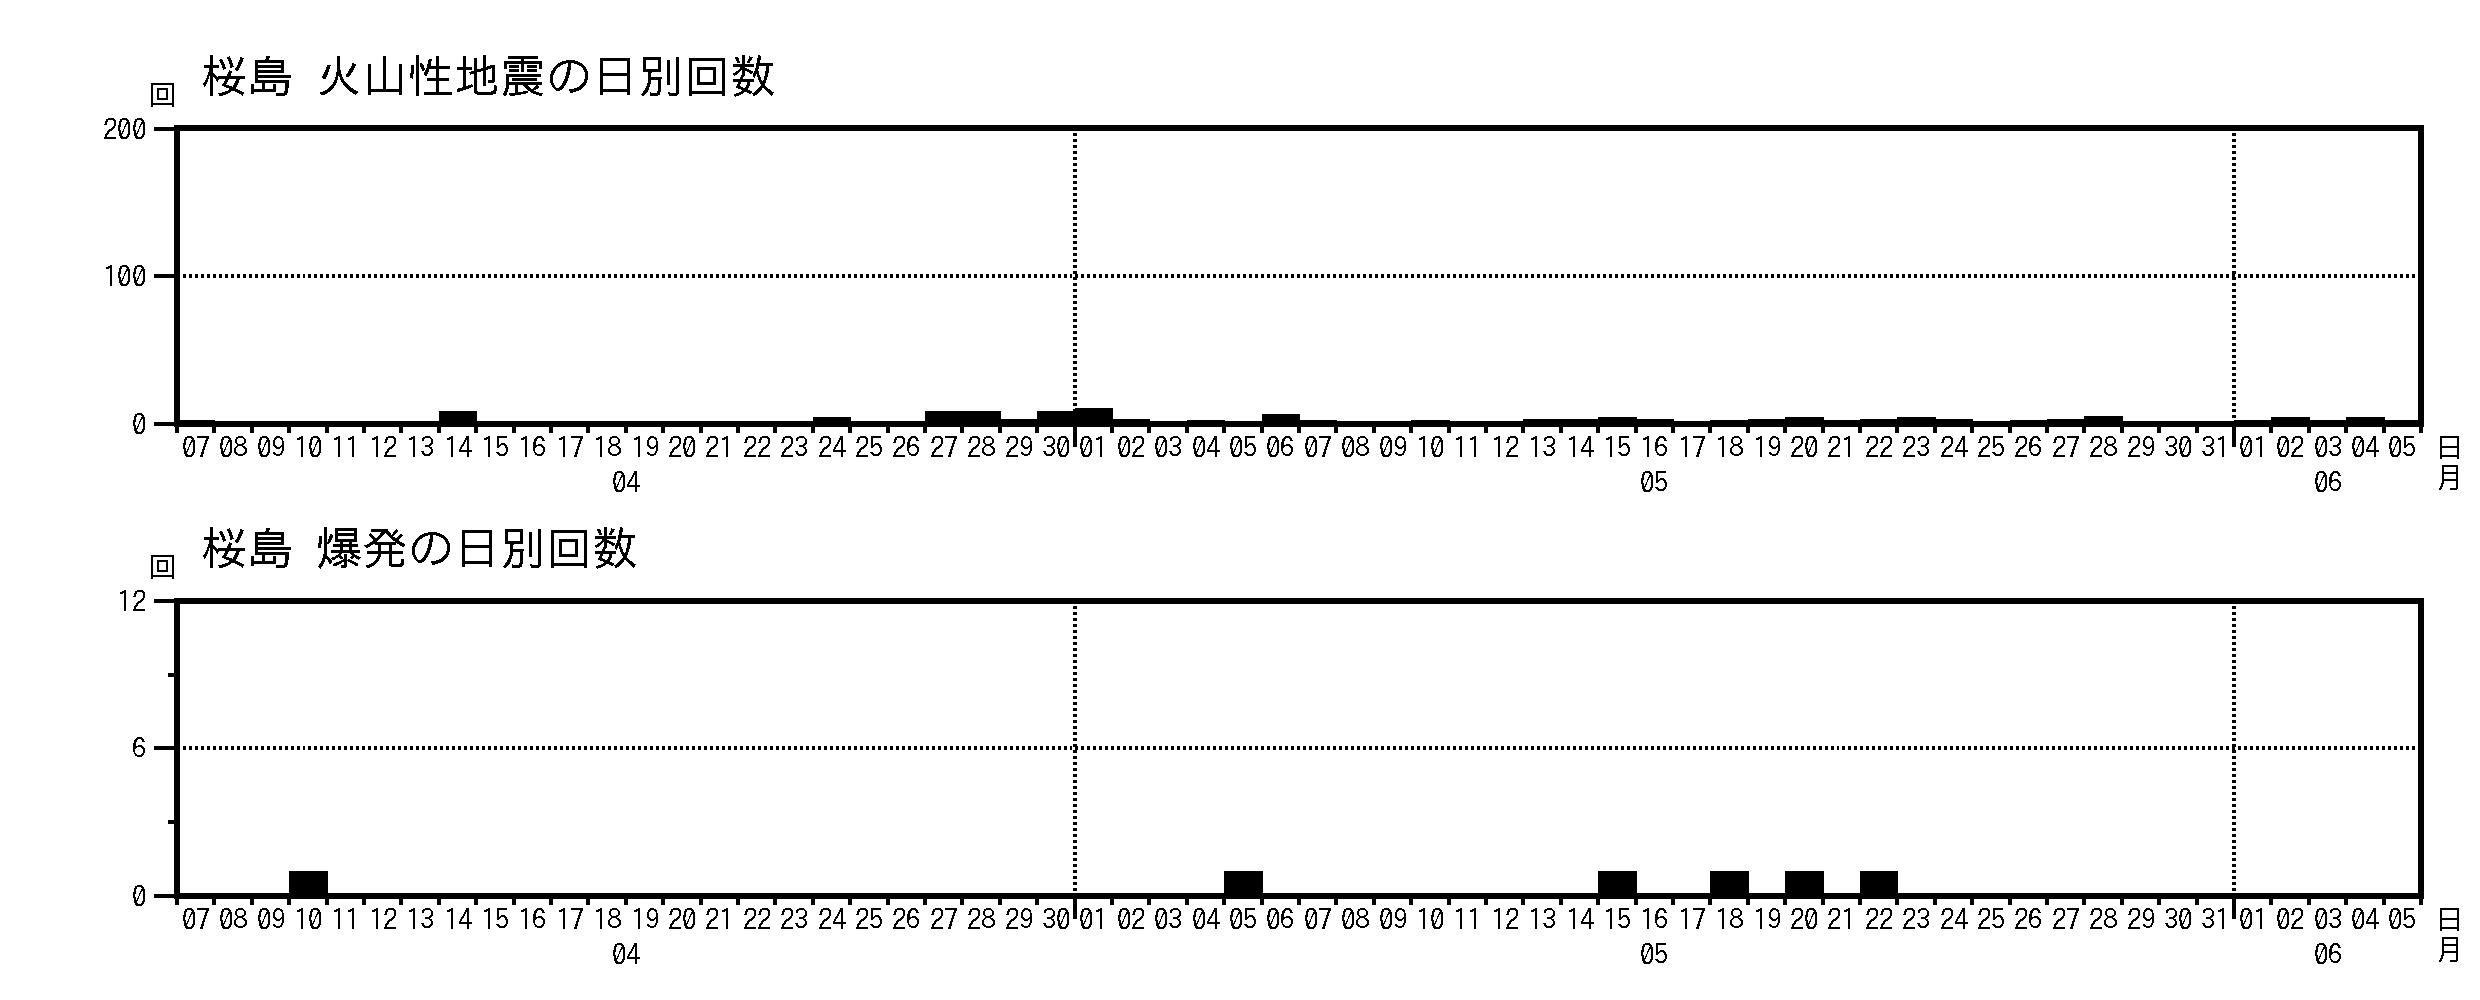 火山性地震・爆発の回数